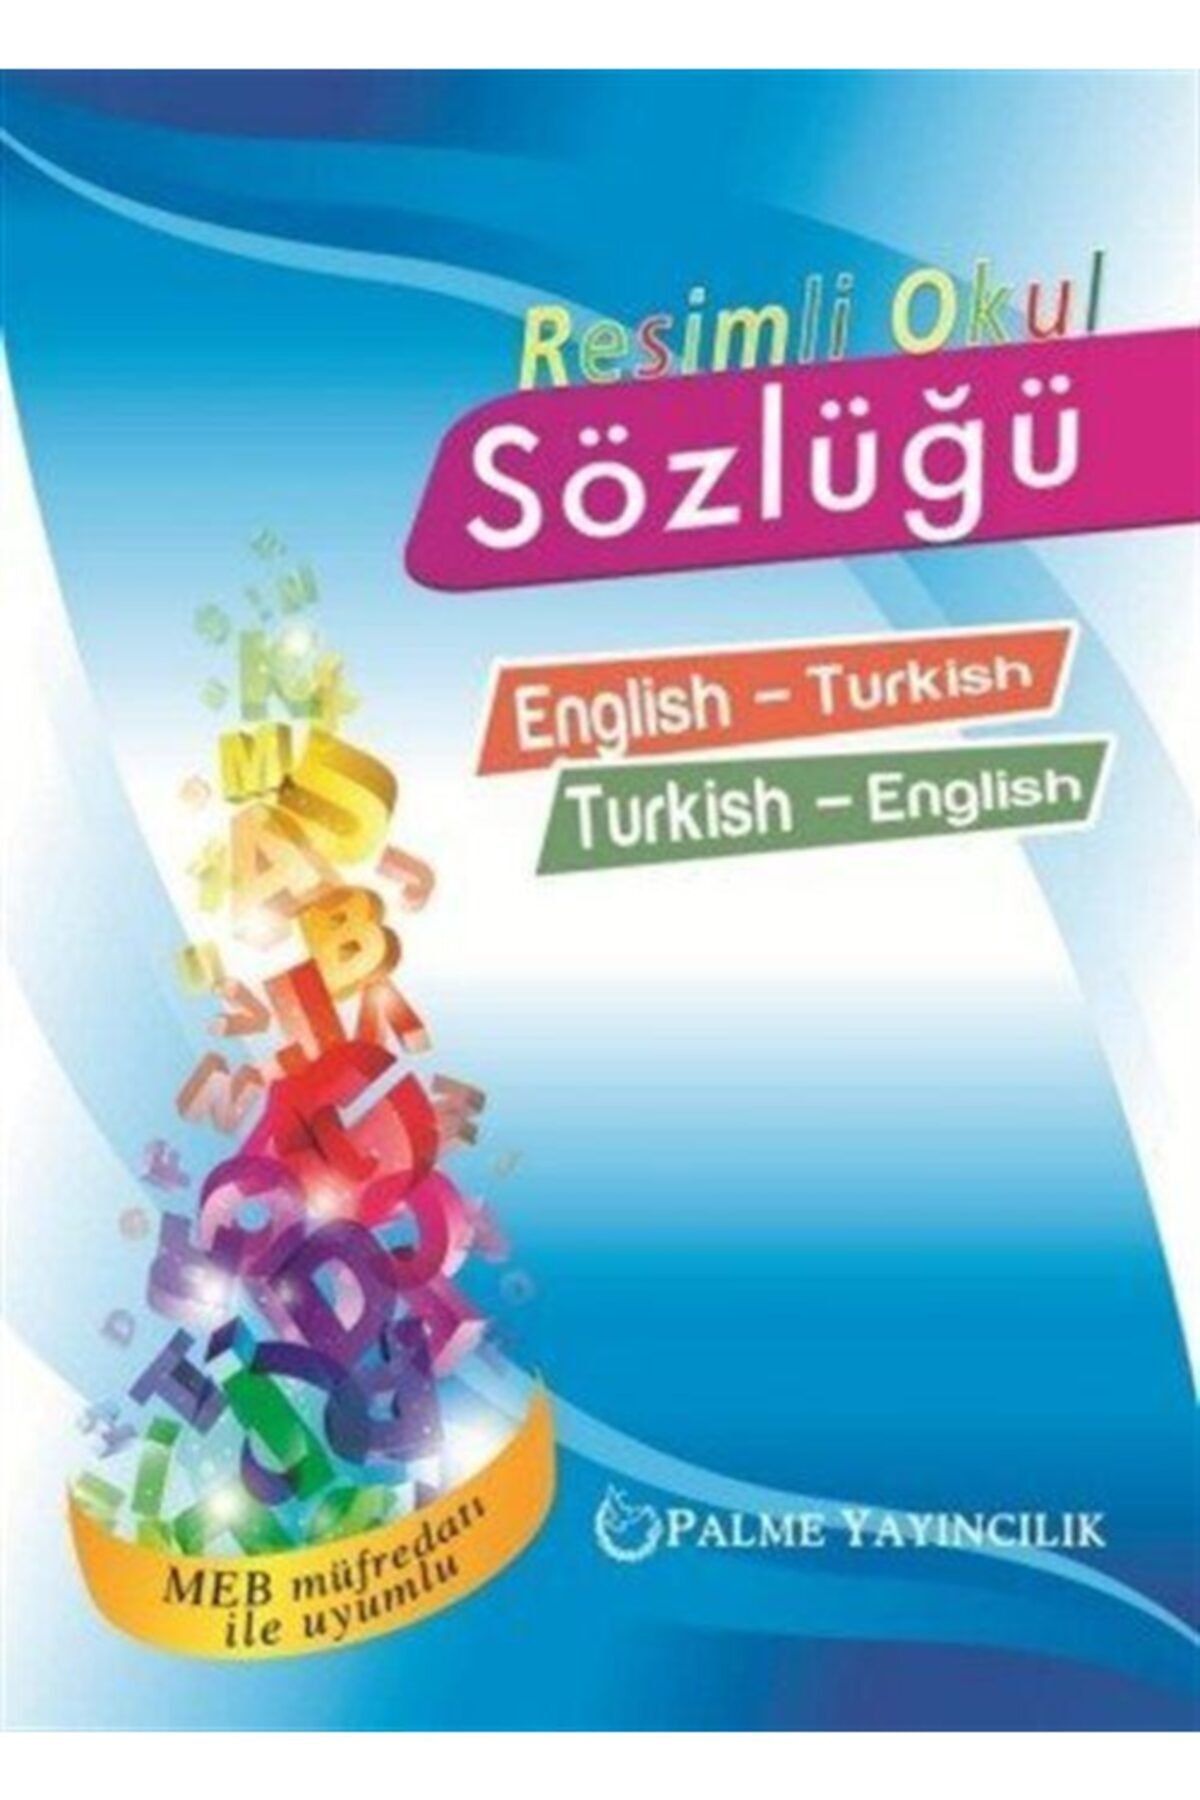 Palme Yayınevi Resimli Okul Sözlüğü English-turkish Turkish-english